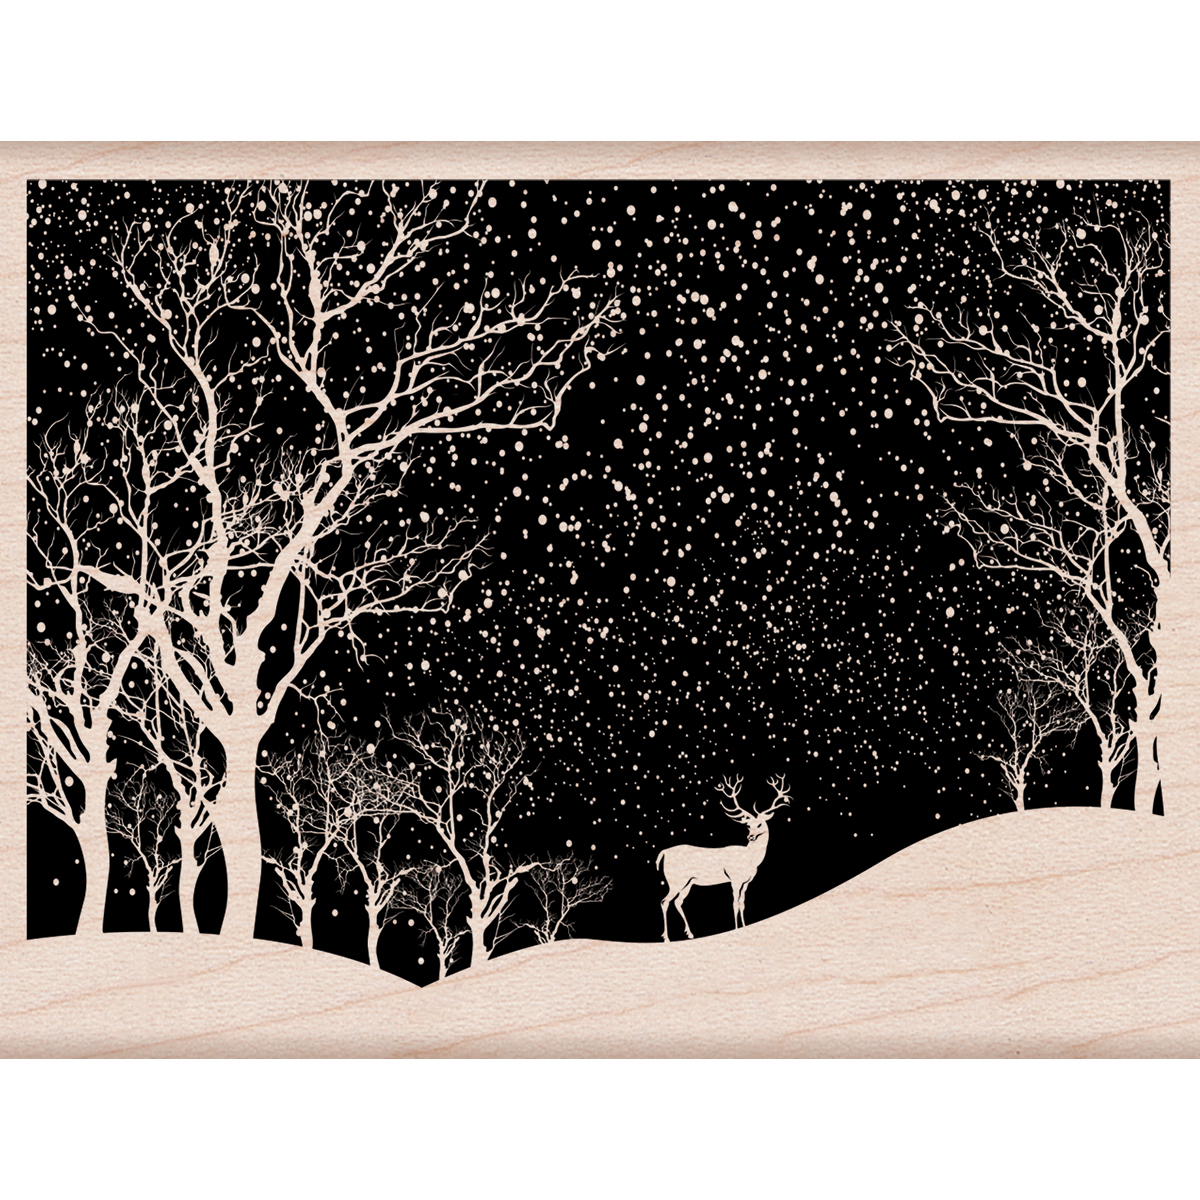 Bild von Hero Arts Mounted Rubber Stamp 4.25"X3.25"-Snowy Scene